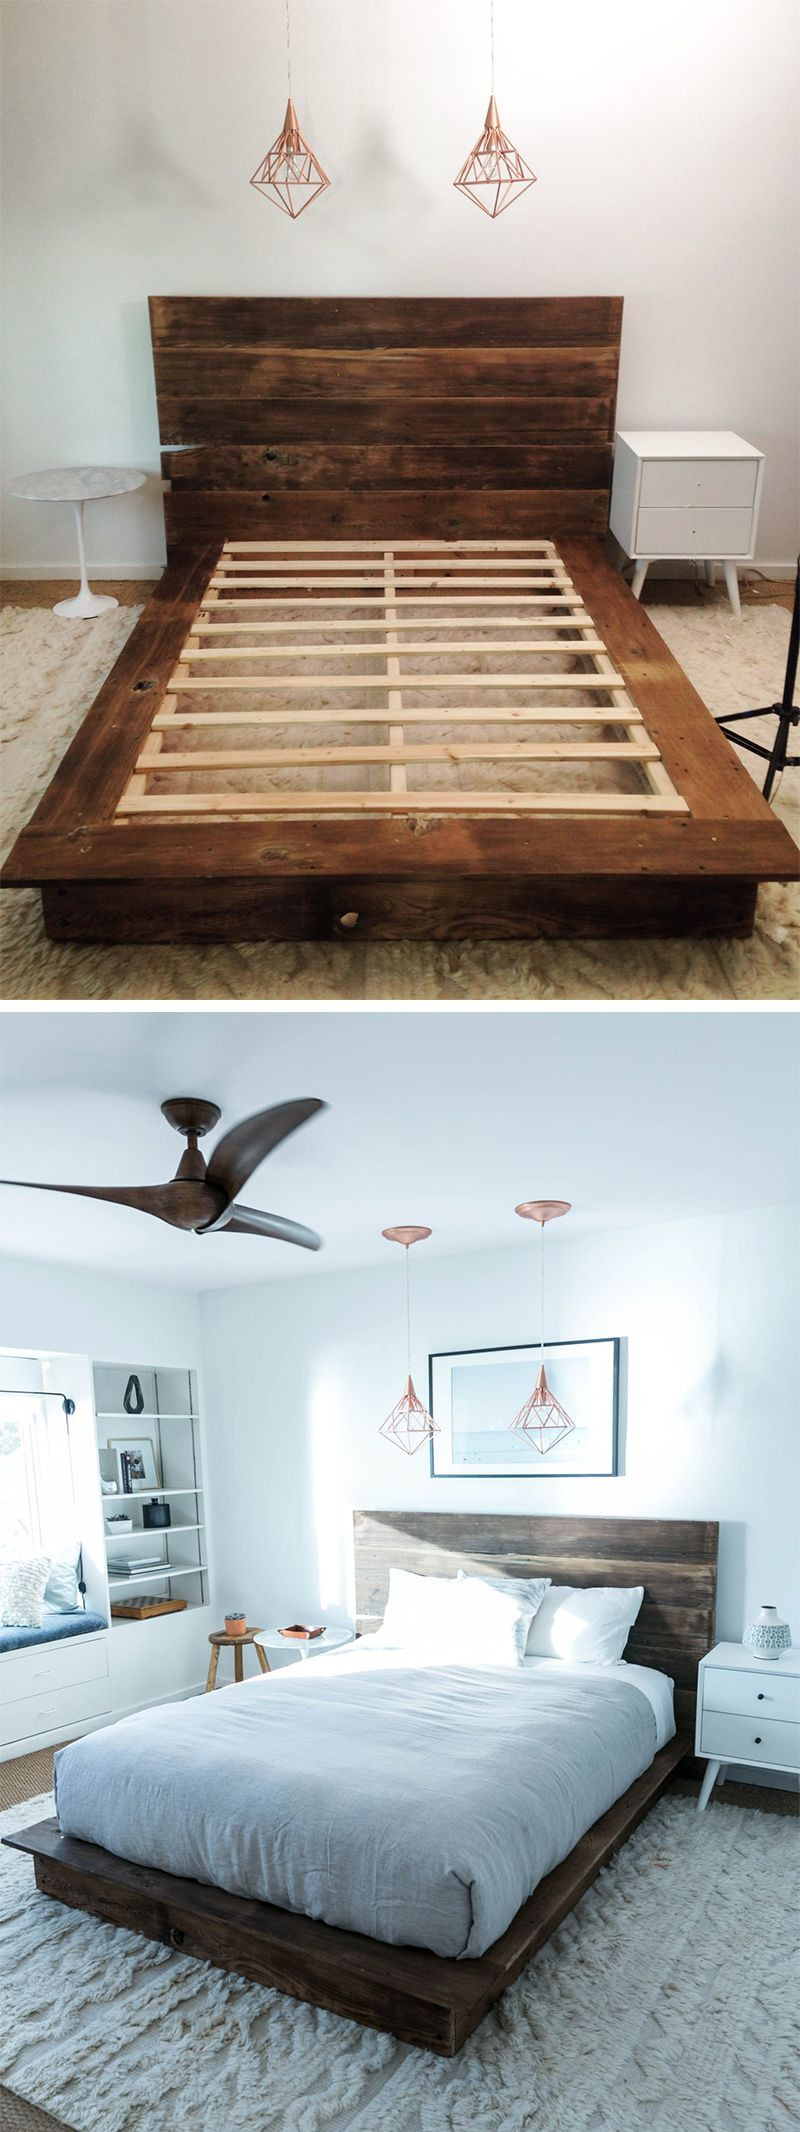 DIY Wooden Beds
 DIY Reclaimed Wood Platform Bed